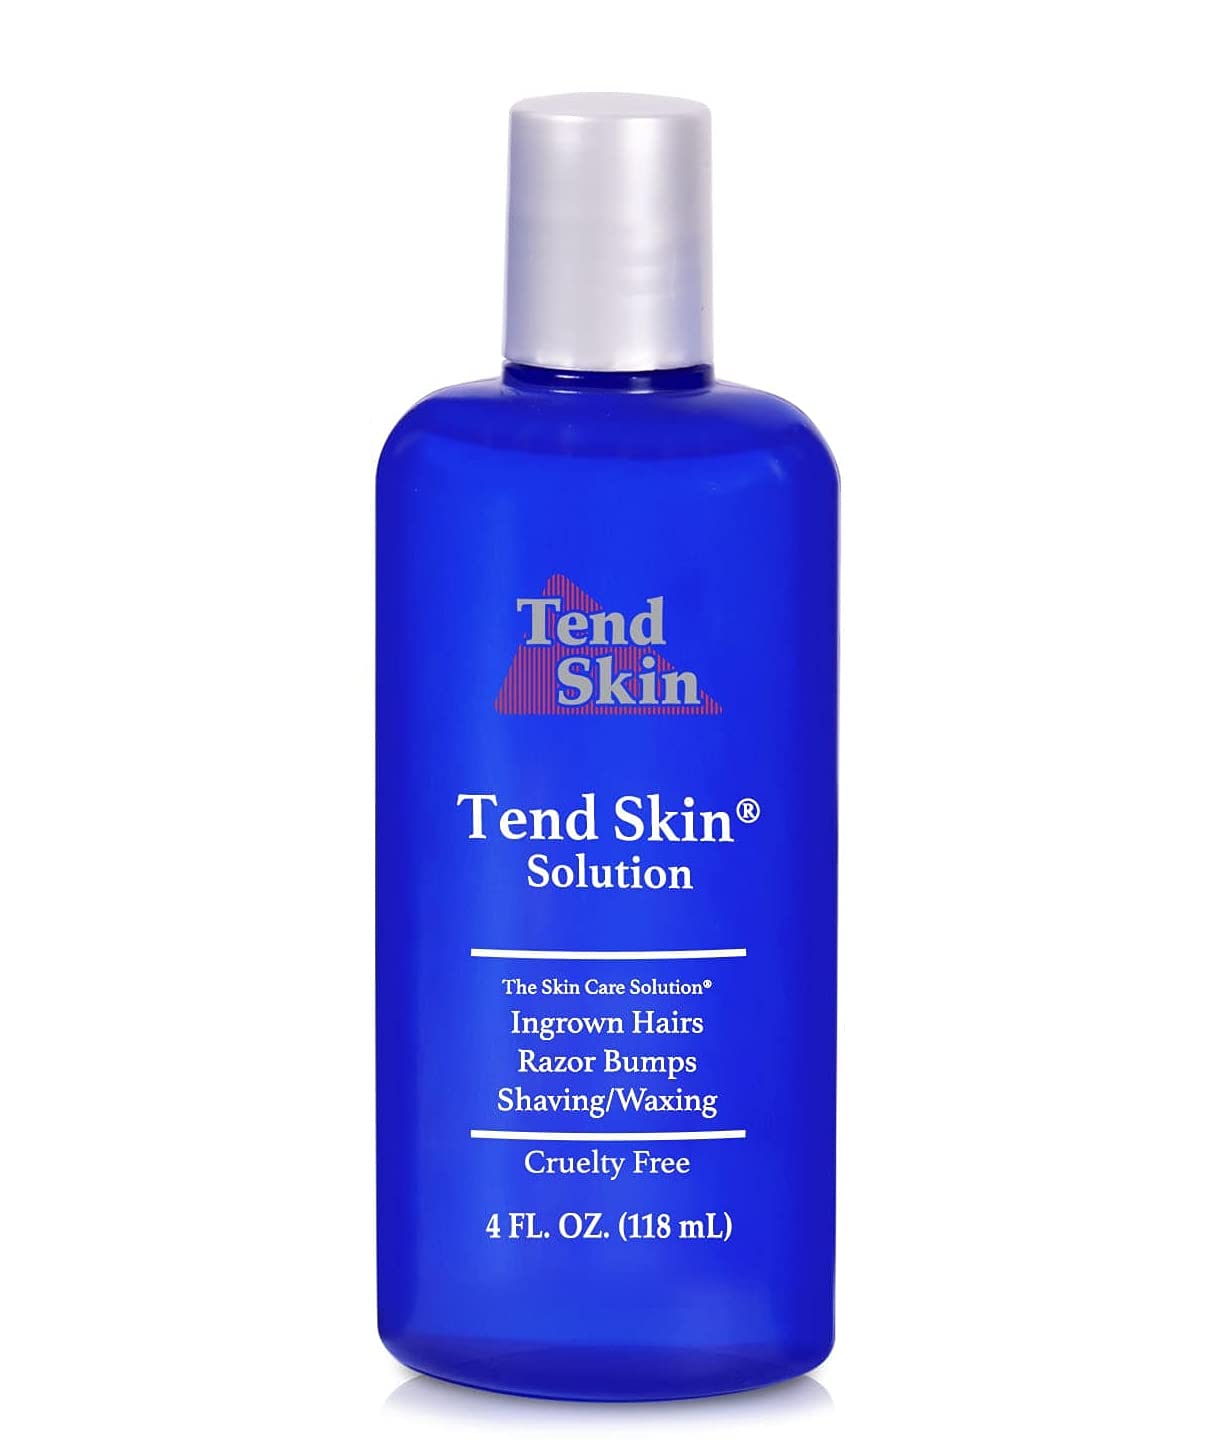 Tend Skin Company